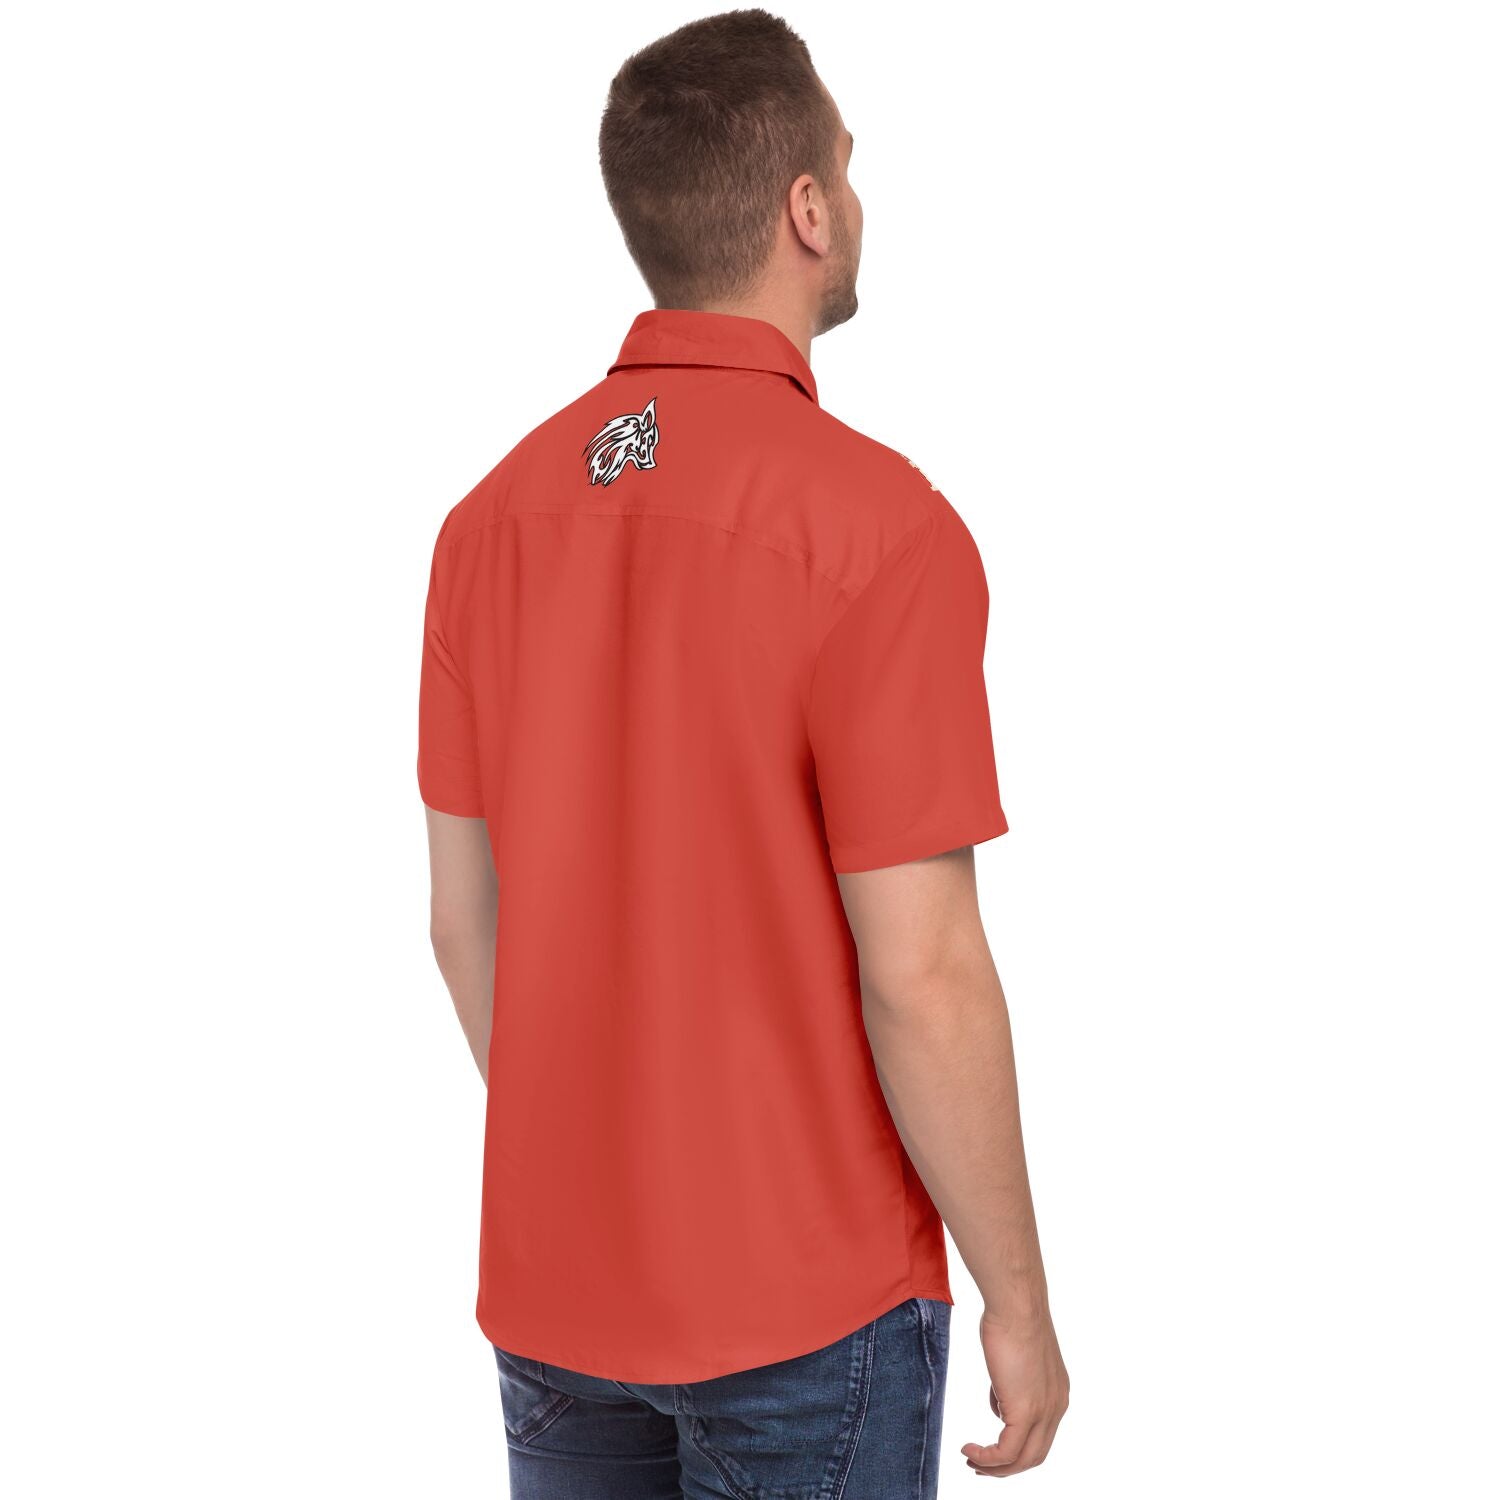 Crane v1 Short Sleeve Retro Bowling Shirt